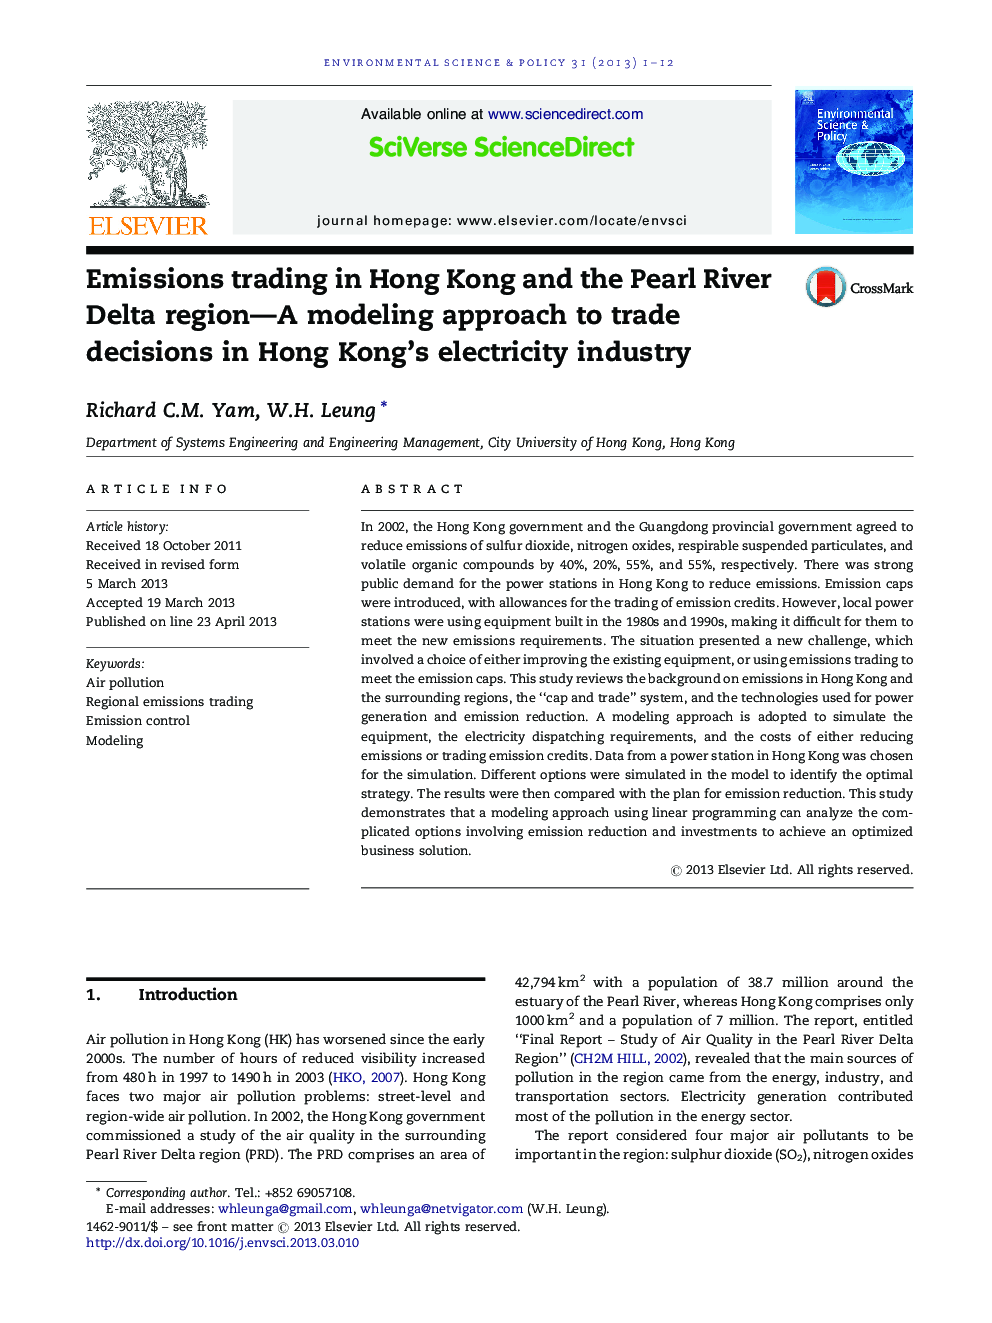 معامله گران در هنگ کنگ و منطقه دلتای رودخانه مروارید - یک روش مدل سازی برای تصمیم گیری های تجاری در صنعت برق هنگ کنگ 